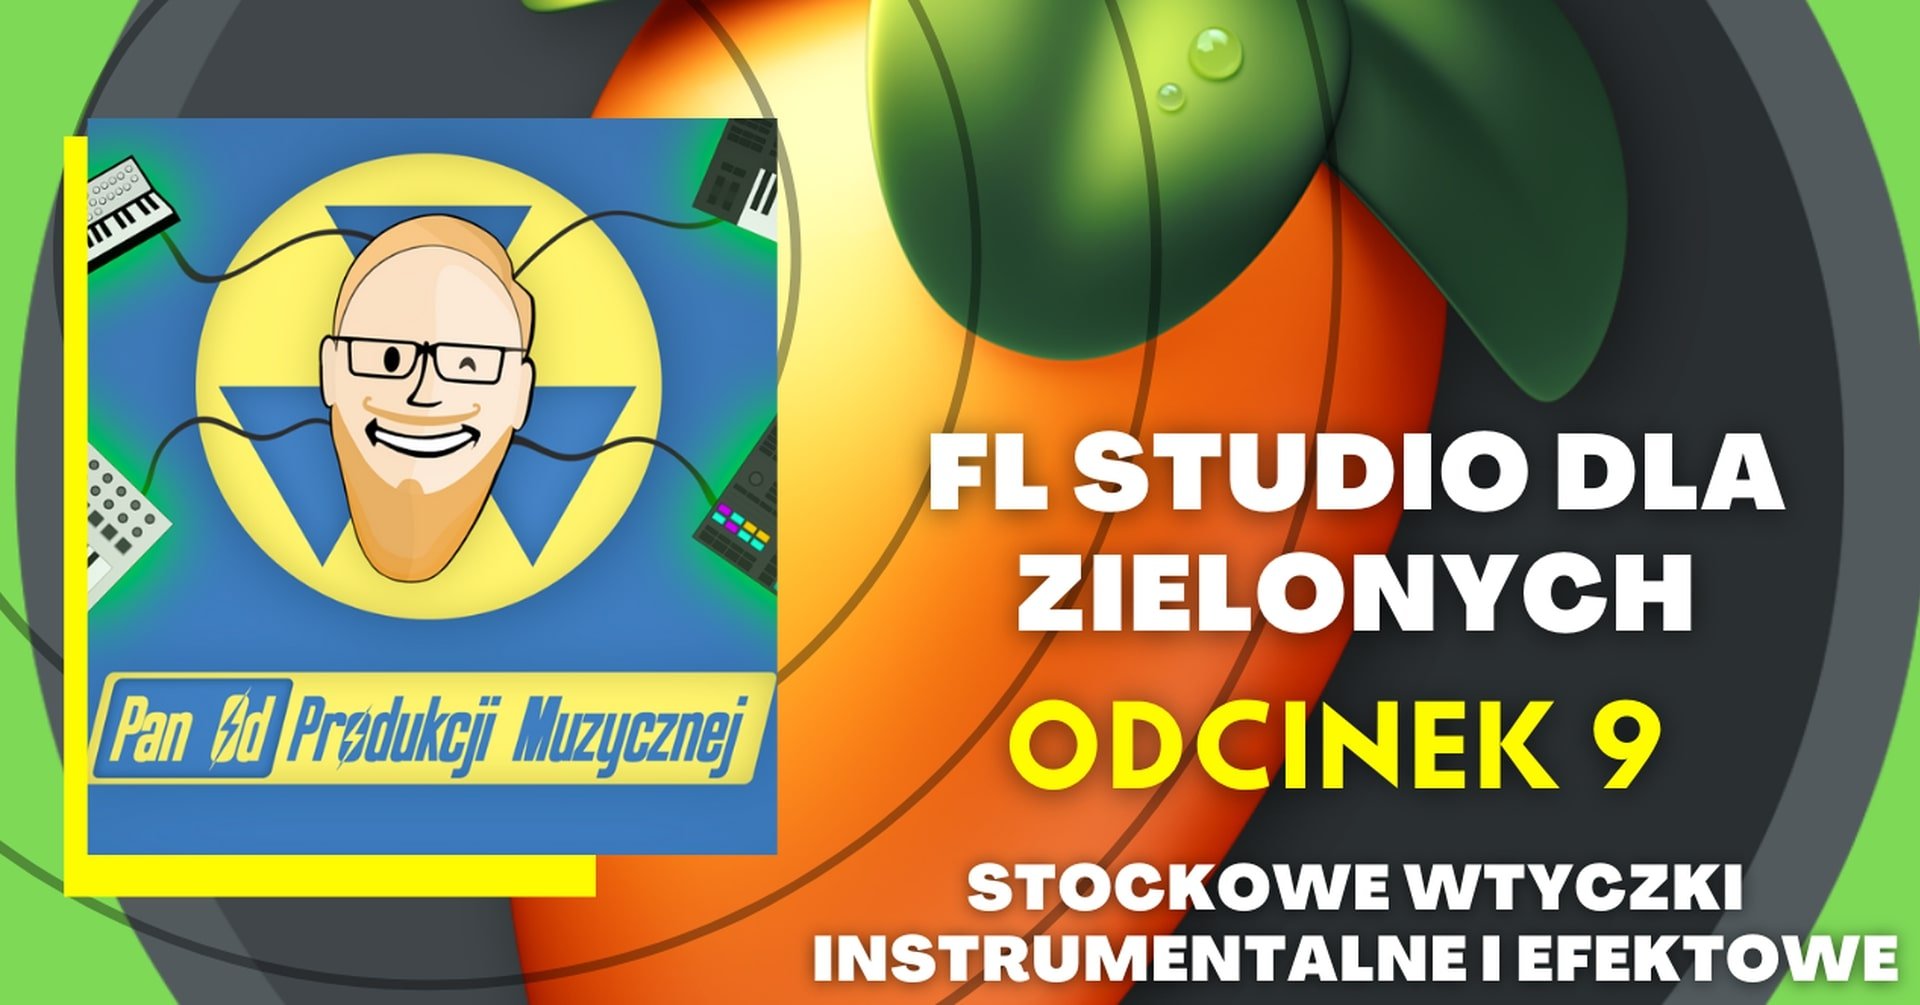 FL STUDIO DLA ZIELONYCH - stockowe wtyczki instrumentalne i efektowe (odc. 9)